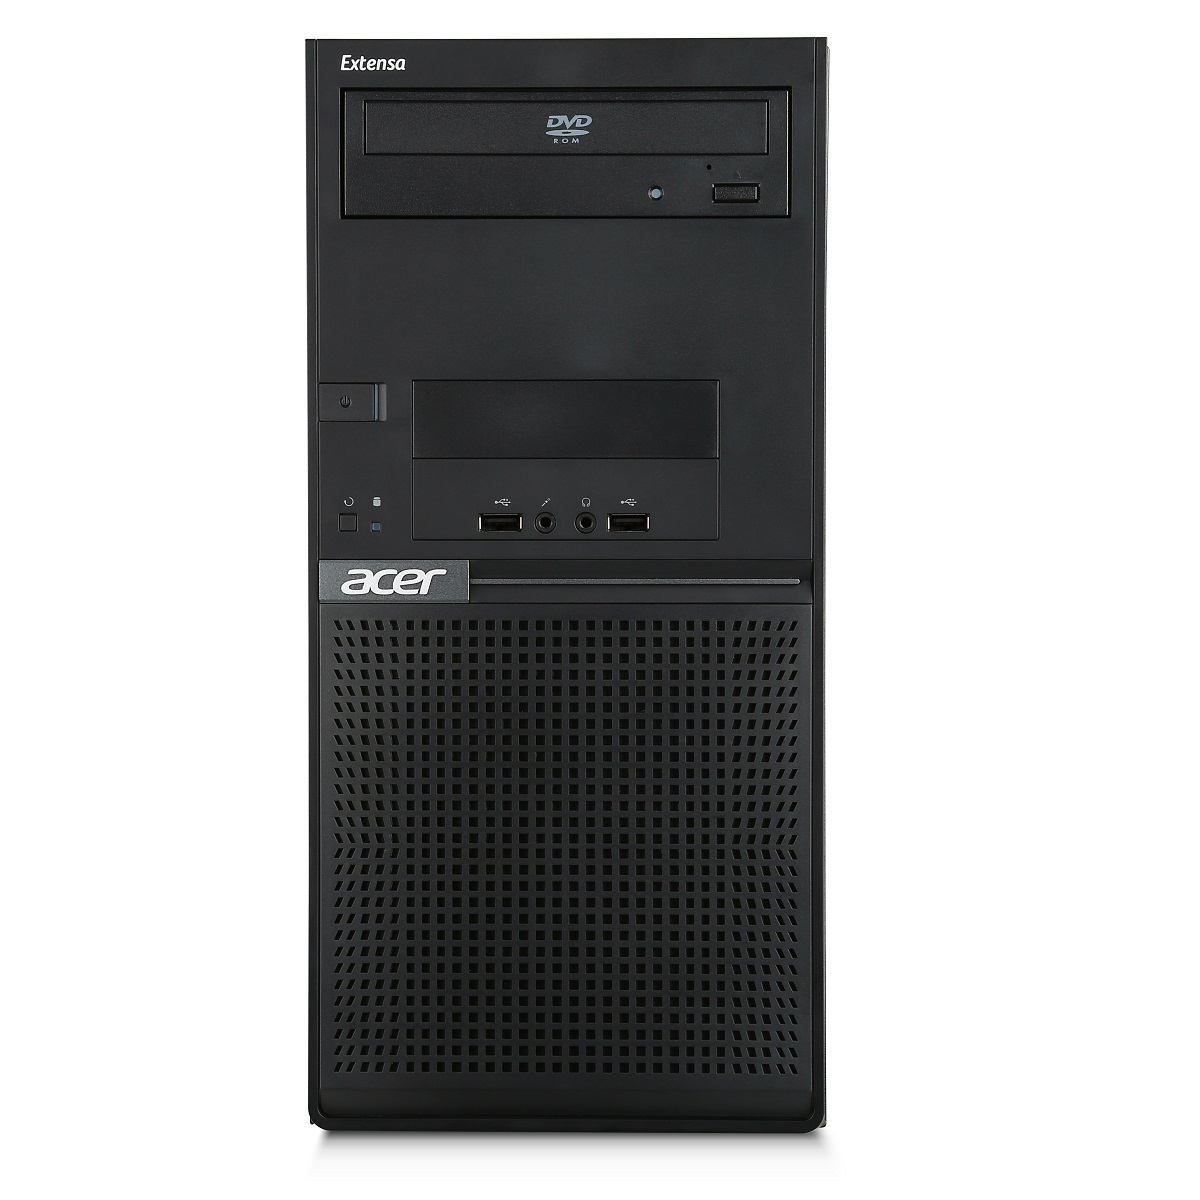 Máy tính để bàn Acer Extensa M2610  (G3250) - Intel Dual Core G3250 3.2GHz, 2GB RAM, 500GB HDD, Integrated Intel HD Graphics